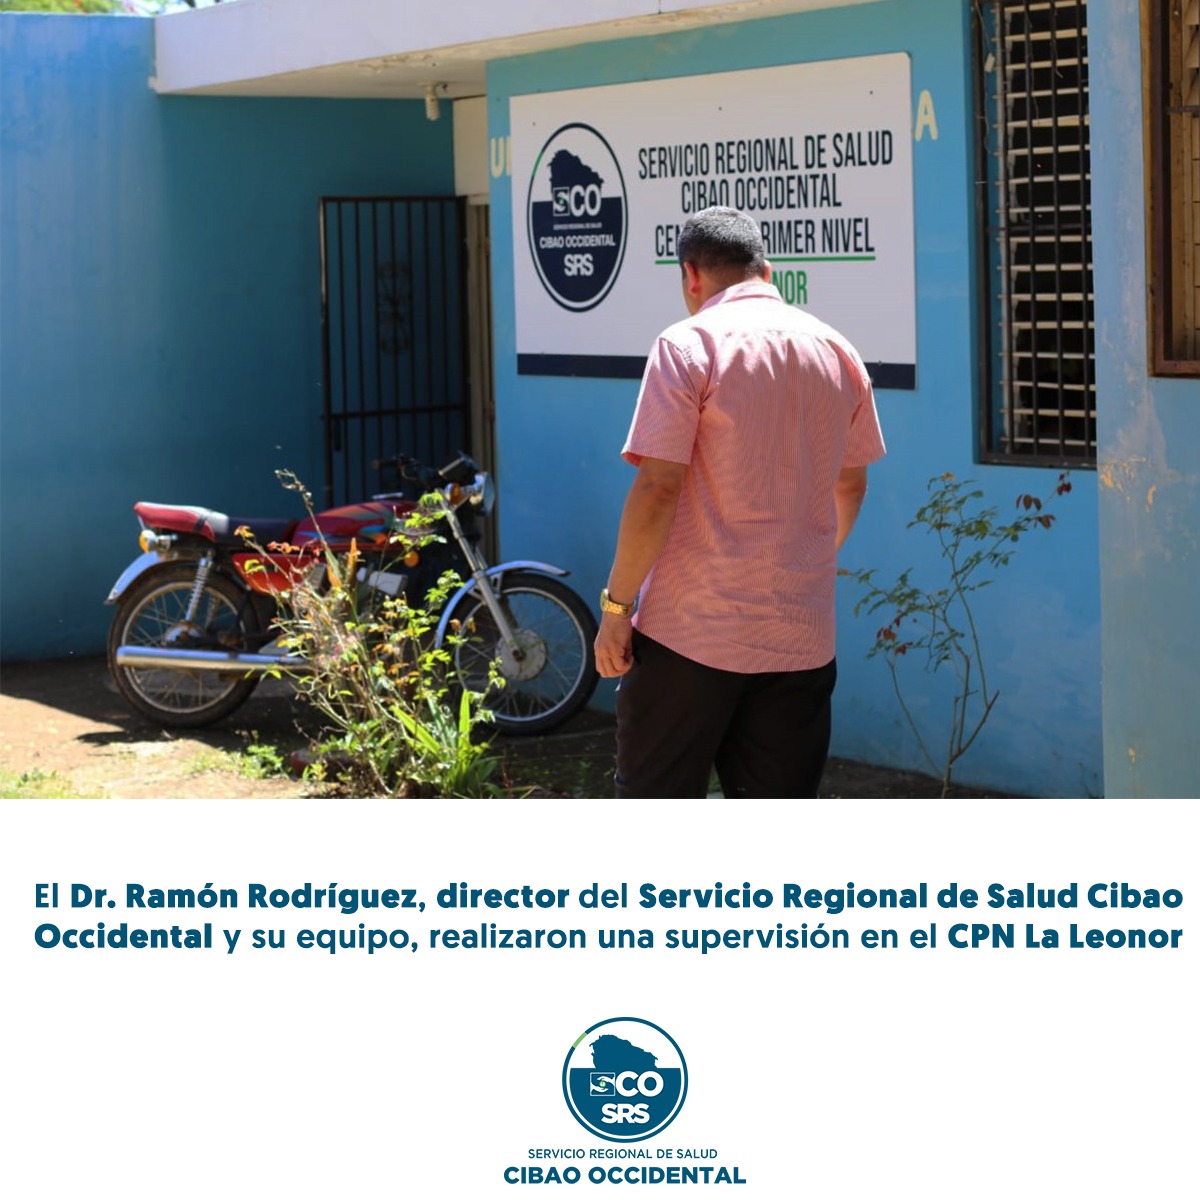 Supervisión del Dr. Ramón Rodríguez director regional de Salud del Cibao Occidental R7 y su Equipo en el CPN La Leonor